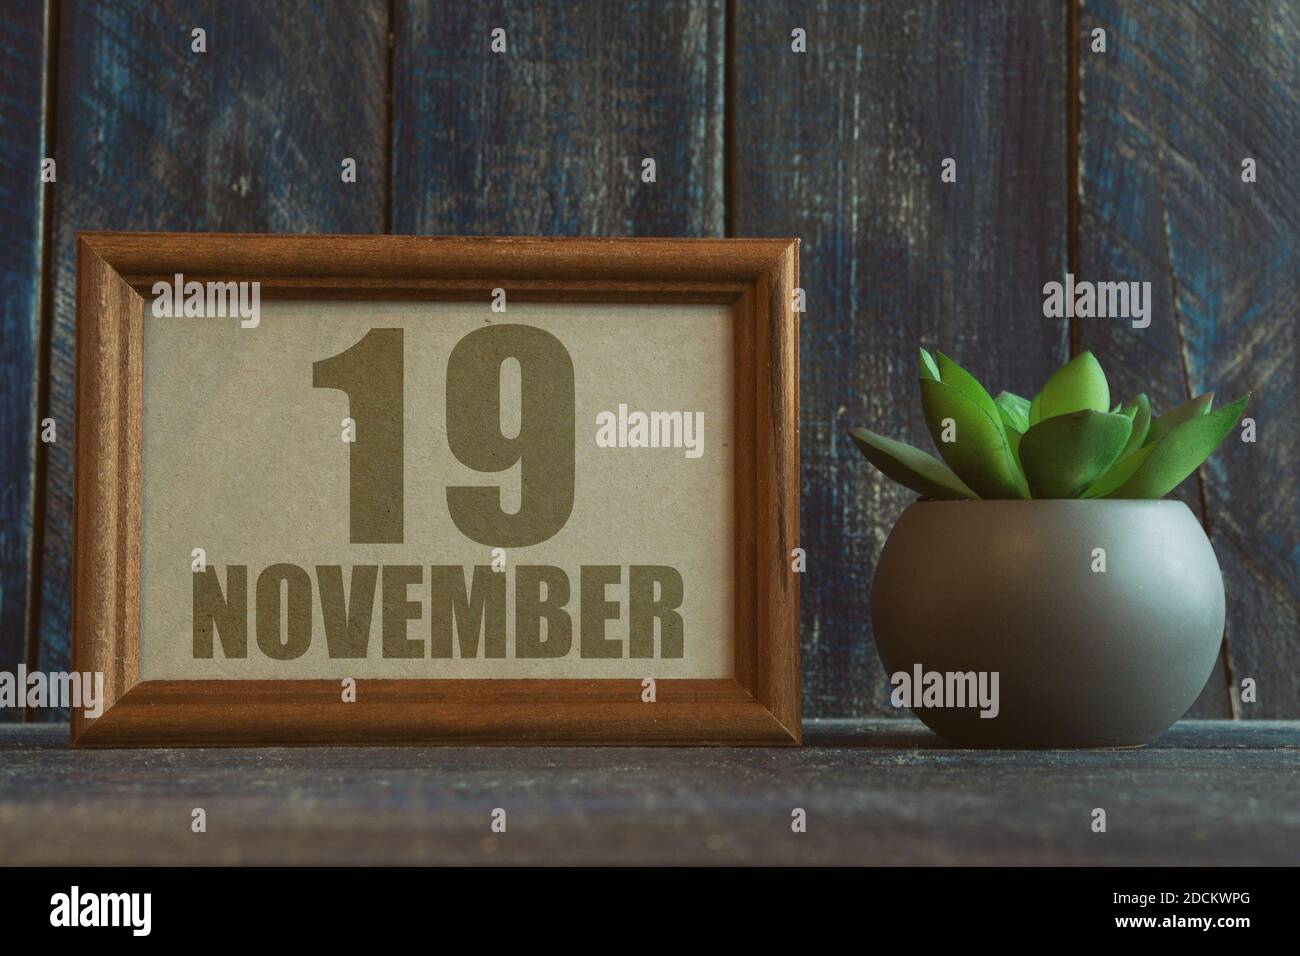 november 19th. Tag 19 des Monats, Datum im Rahmen neben Sukkulente auf Holzhintergrund Herbstmonat, Tag des Jahres Konzept Stockfoto